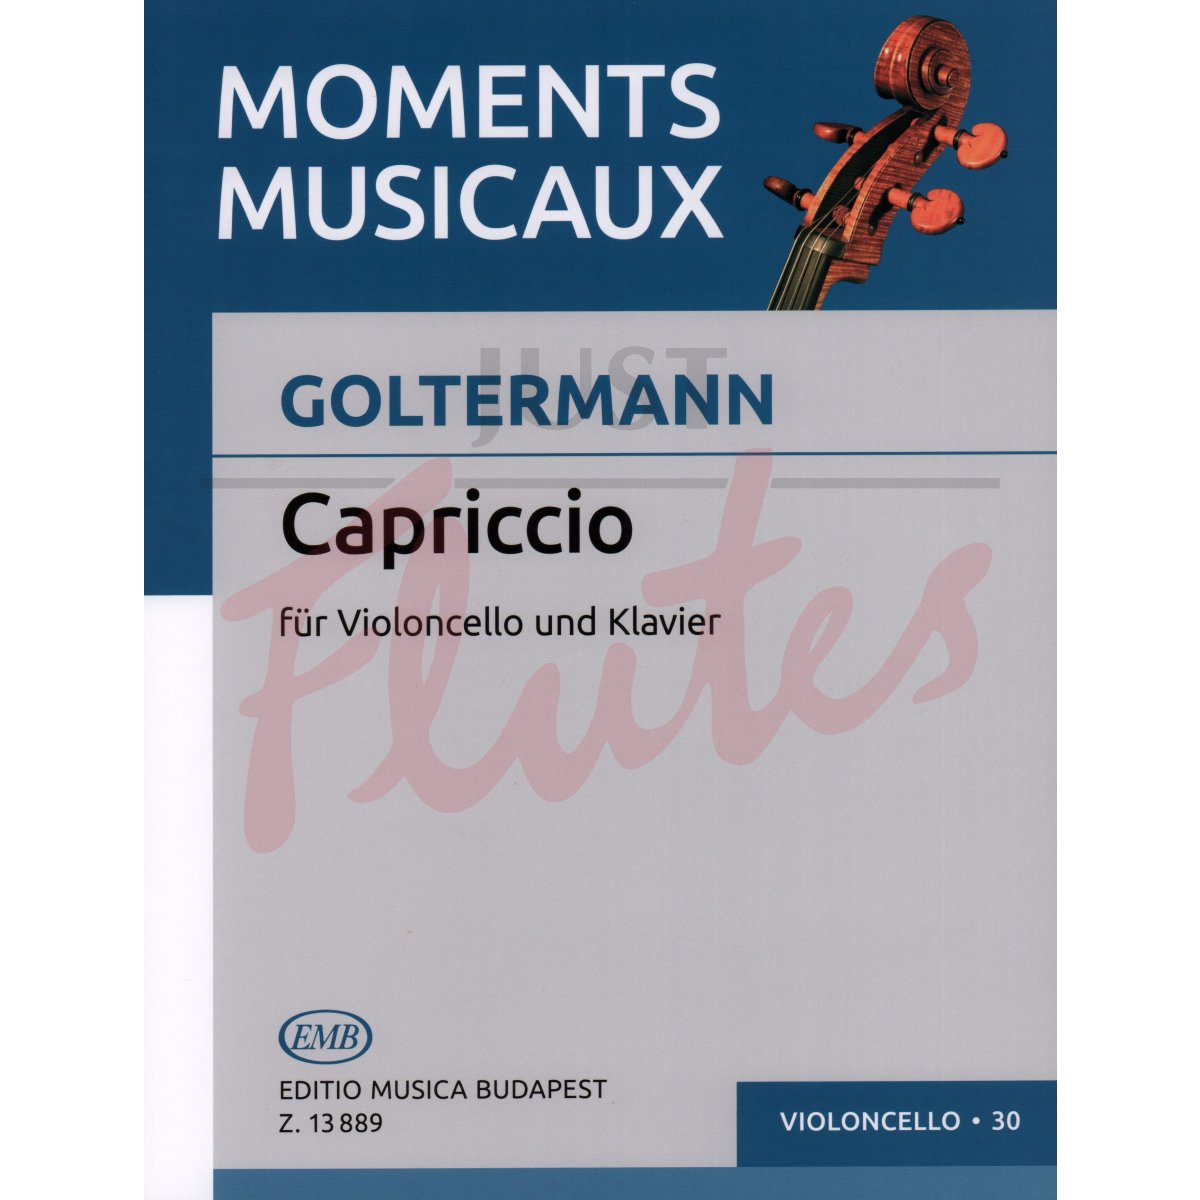 Capriccio for Cello and Piano